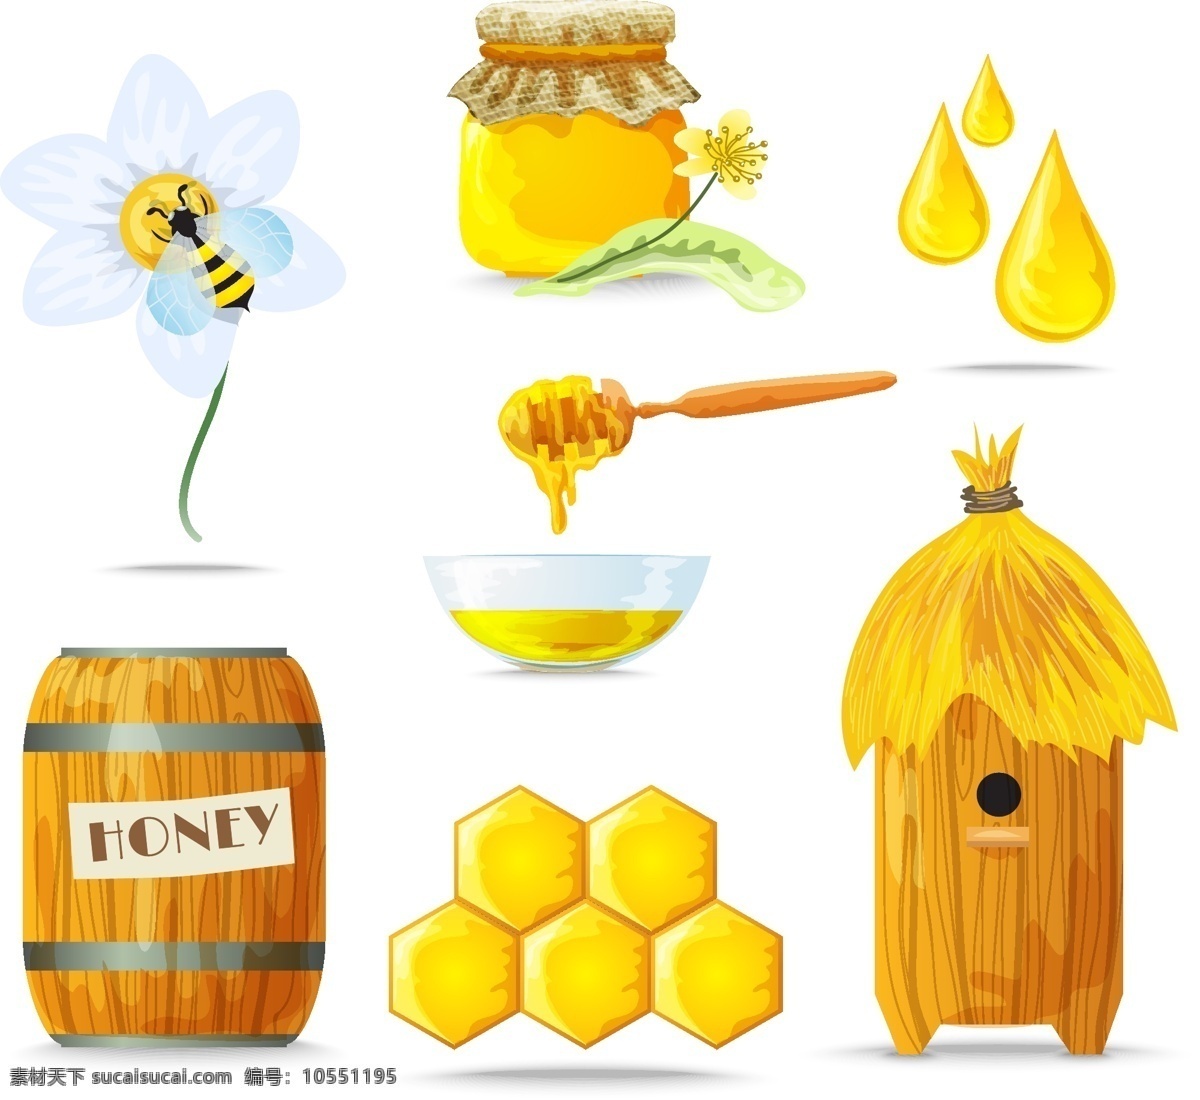 蜂蜜海报 野生蜂蜜 蜂蜜百香果 蜂蜜展板 蜂蜜广告 蜂胶 天然蜂蜜 自然蜂蜜 蜂蜜宣单 蜂蜜画册 蜂蜜模板 蜂蜜制作 蜂蜜工艺 蜂蜜包装 蜂蜜展架 绿色蜂蜜 蜂蜜插画 蜂蜜文化 蜂蜜图片 蜂蜜养殖 蜂蜜设计 蜂蜜产品 蜂蜜礼品盒 蜂蜜外盒包装 蜂蜜制作工艺 蜂蜜素材 蜜蜂 蜜蜂养殖